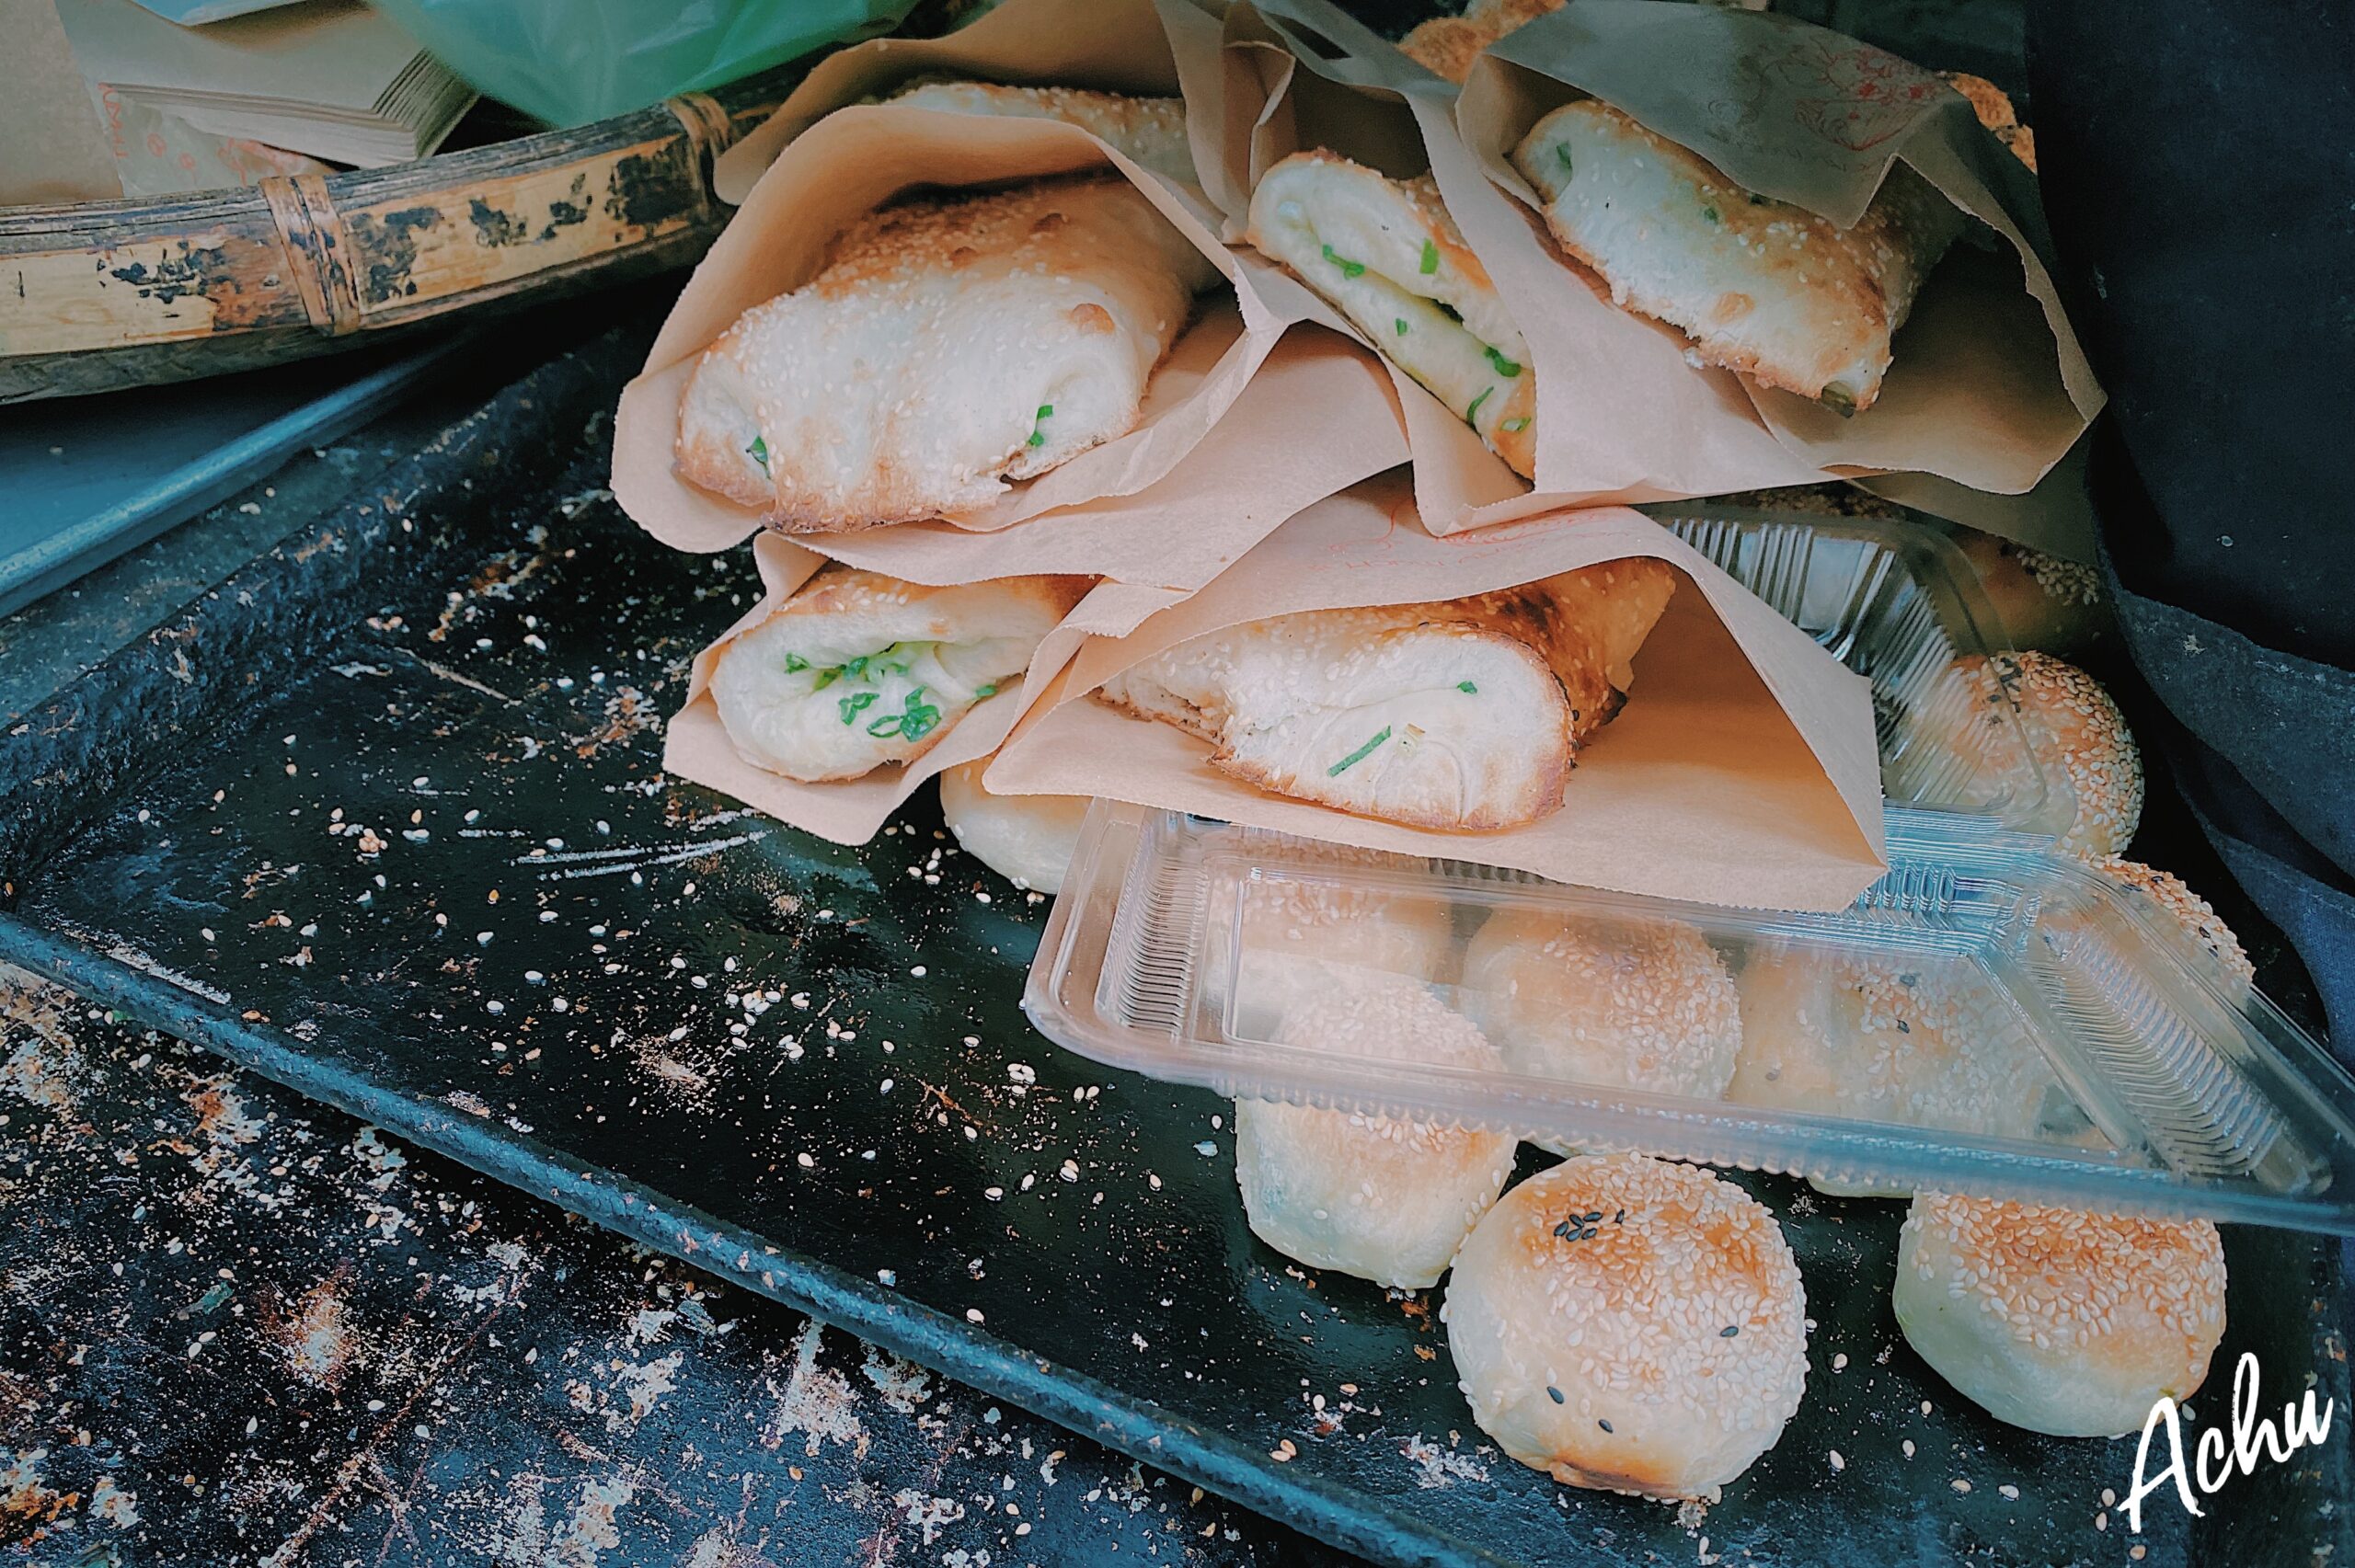 【南港汐止美食】小林碳烤燒餅 蟹殼黃 (可素食) 汐止橫科市場巷弄內的美食  有好吃的胡椒餅